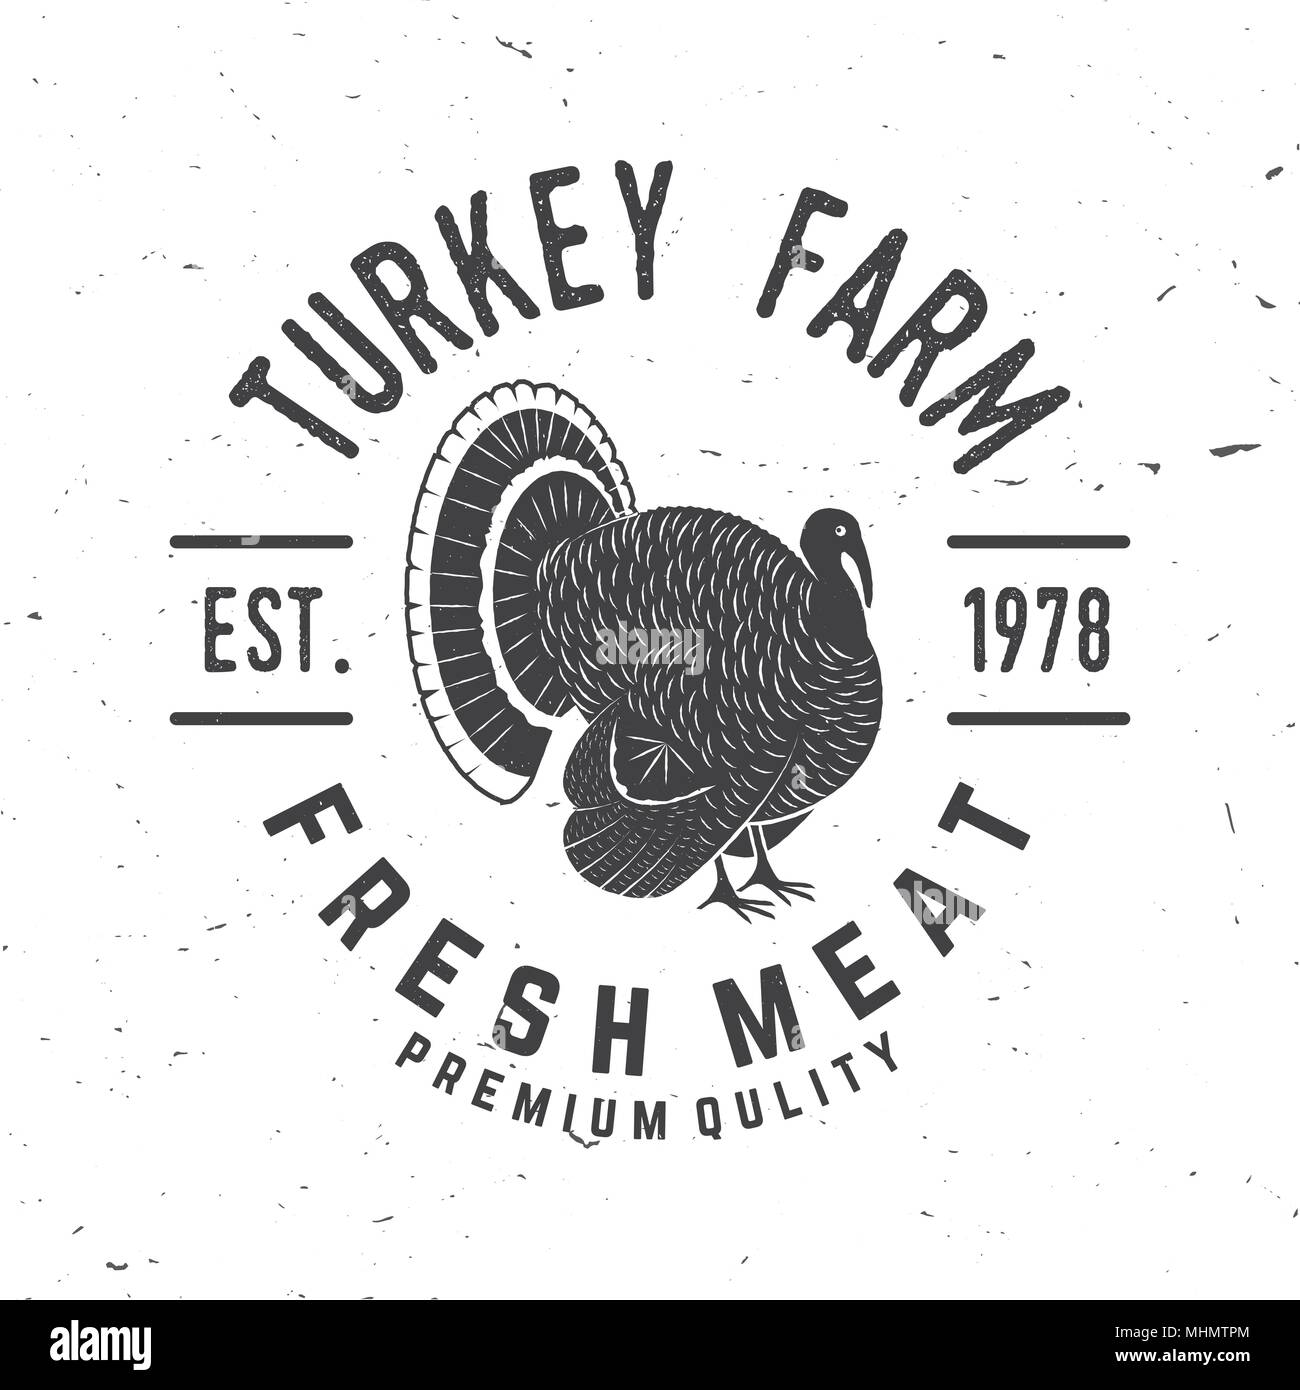 Die Türkei Bauernhof Abzeichen oder Label. Frisches Fleisch. Vector Illustration. Vintage Typografie Design mit der Türkei Silhouette. Elemente auf das Thema der Türkei weit Stock Vektor